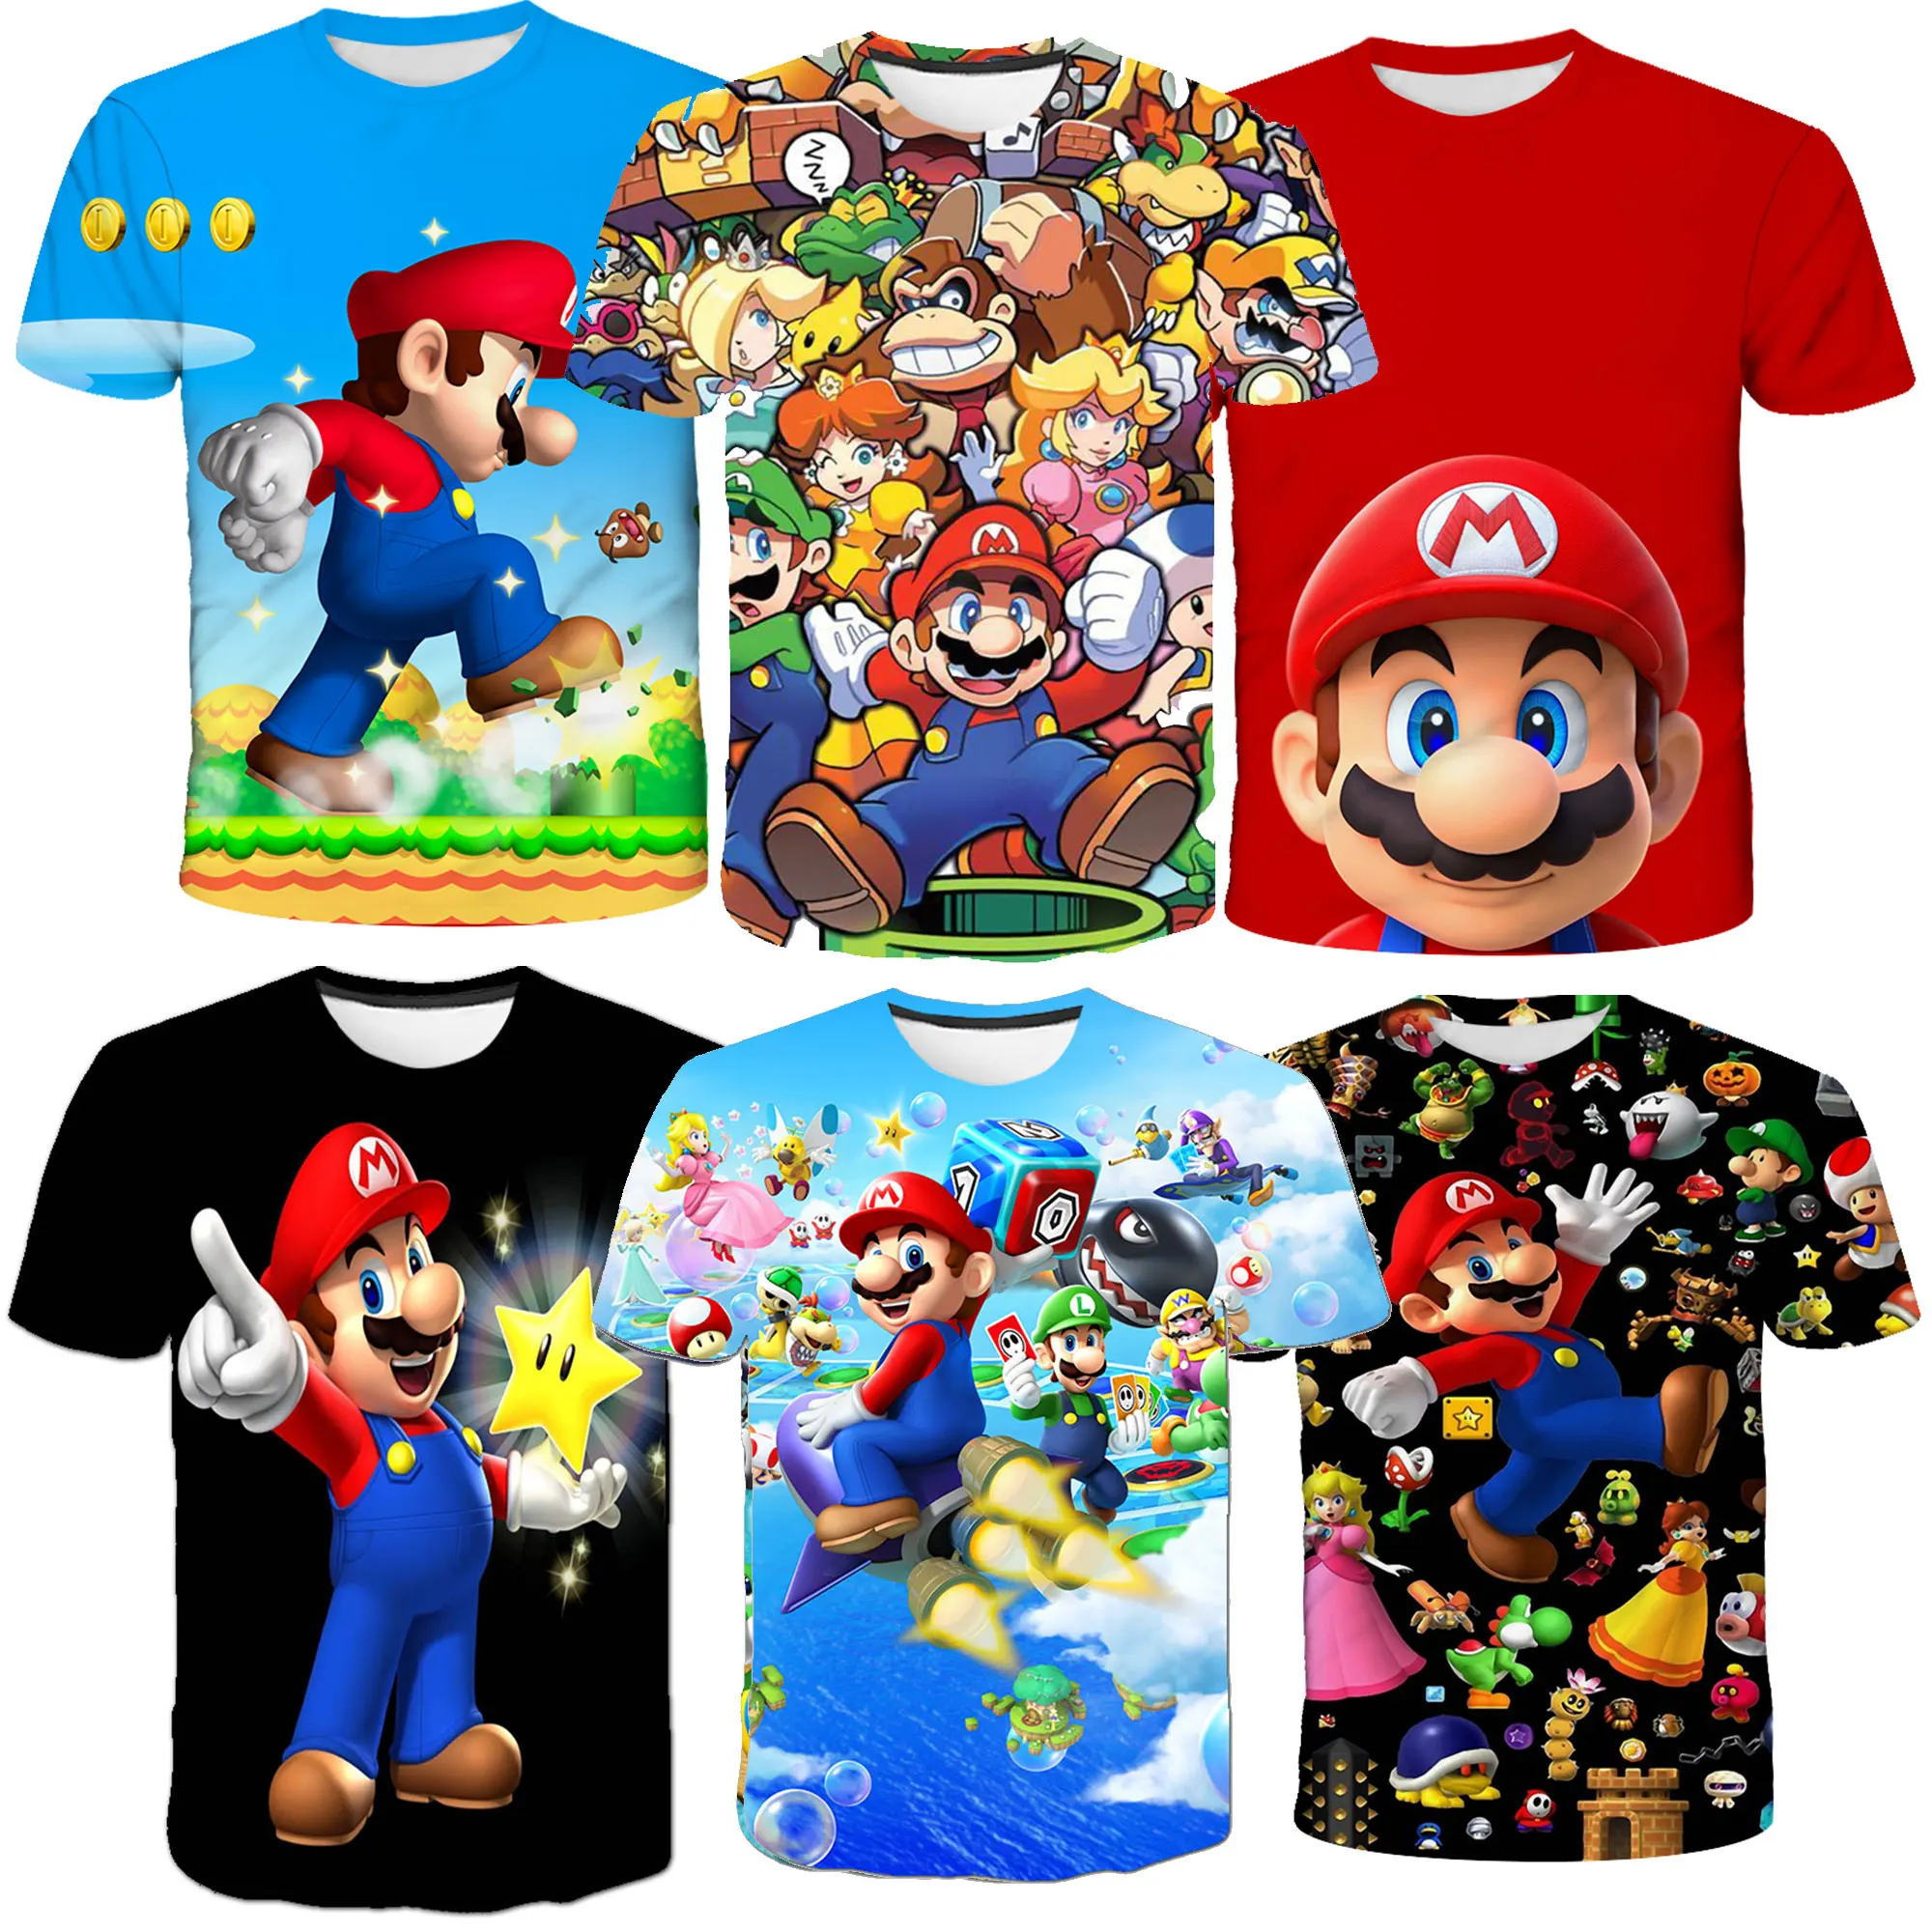 

Детская футболка с принтом "Супер Марио", Детские футболки для мальчиков, детская одежда, топы, футболки для Марио, Детская футболка с коротким рукавом, одежда для мальчиков от 3 до 14 лет